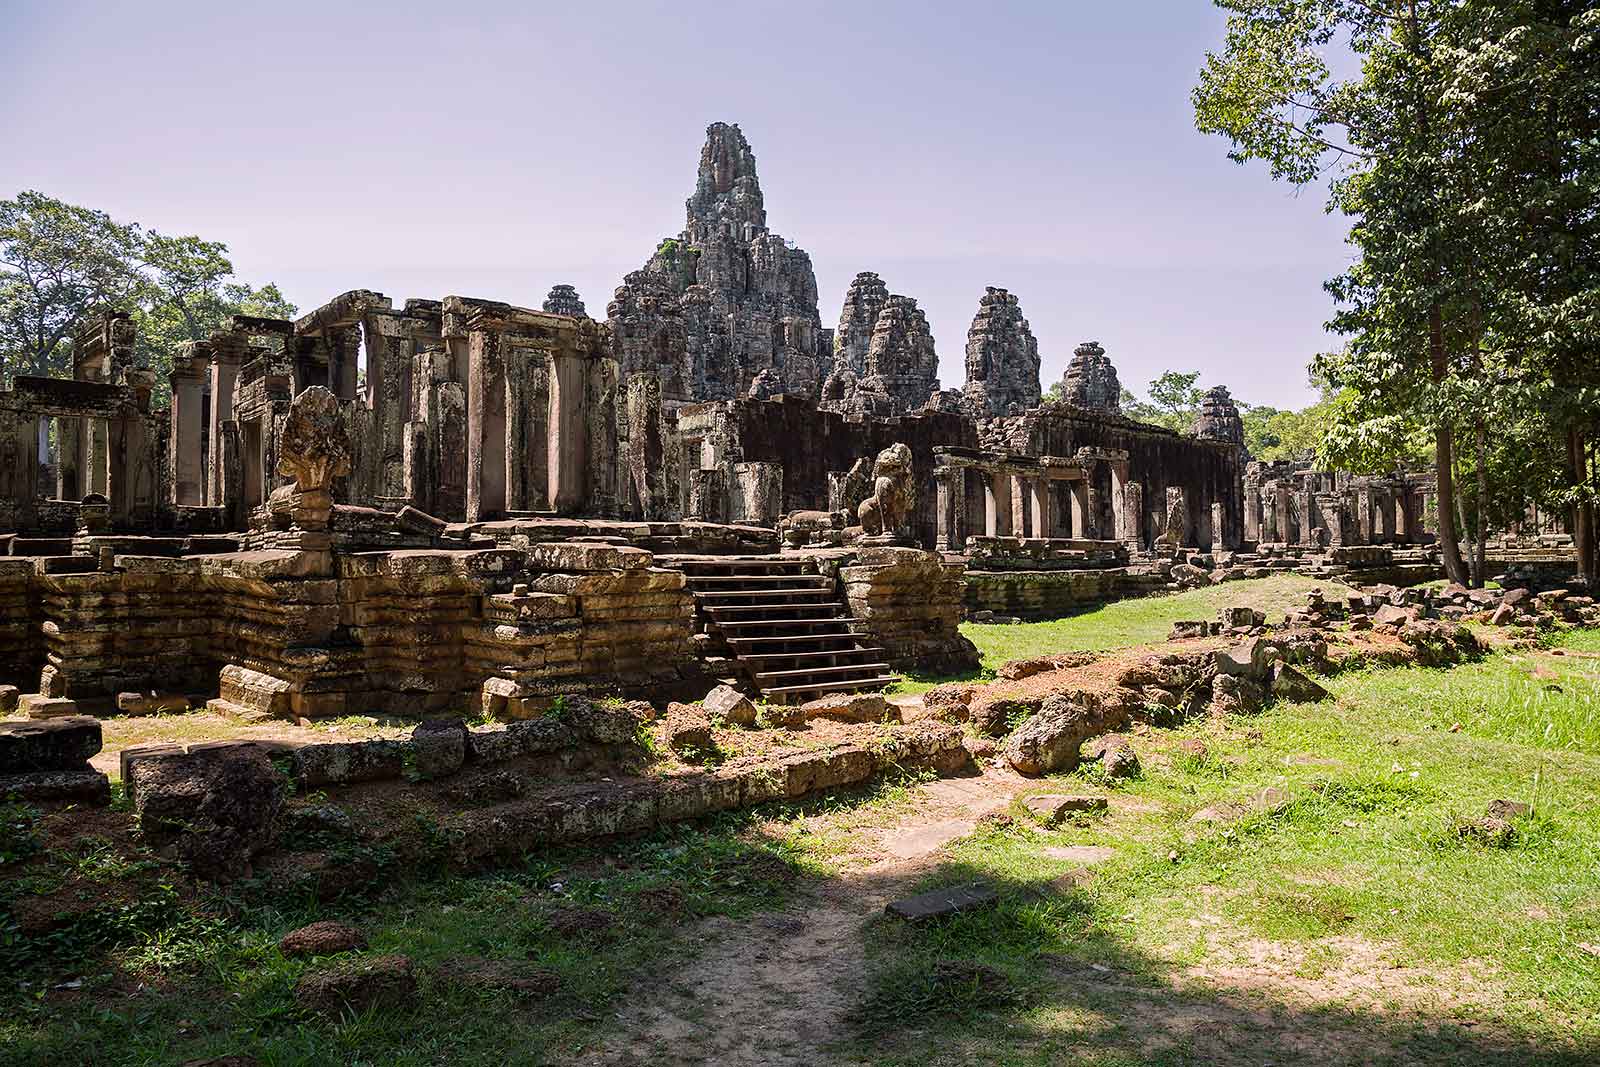 Bayon temple in Angkor Wat, Cambodia.